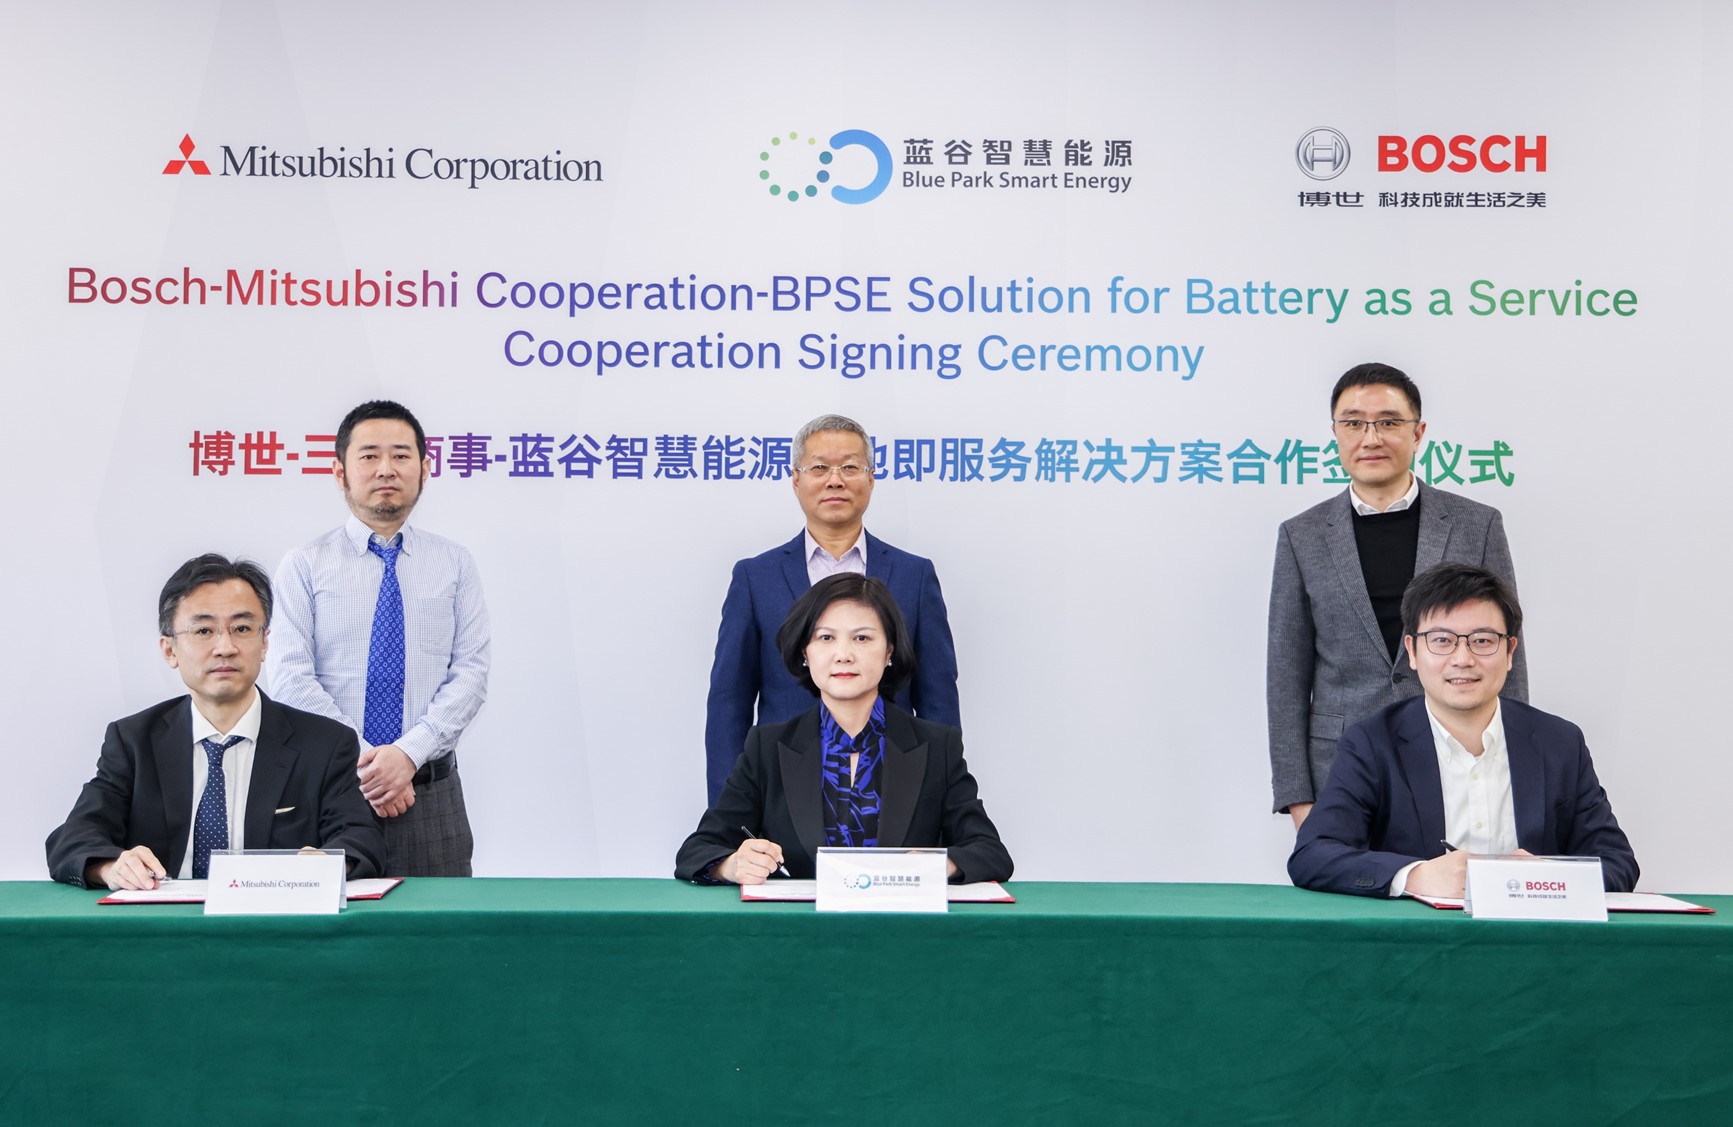 01 博世、三菱商事和蓝谷能源签署战略合作备忘录 Bosch, Mitsubishi Corporation and Blue Park Smart Energy signed a strategic cooperation memorandum.jpg